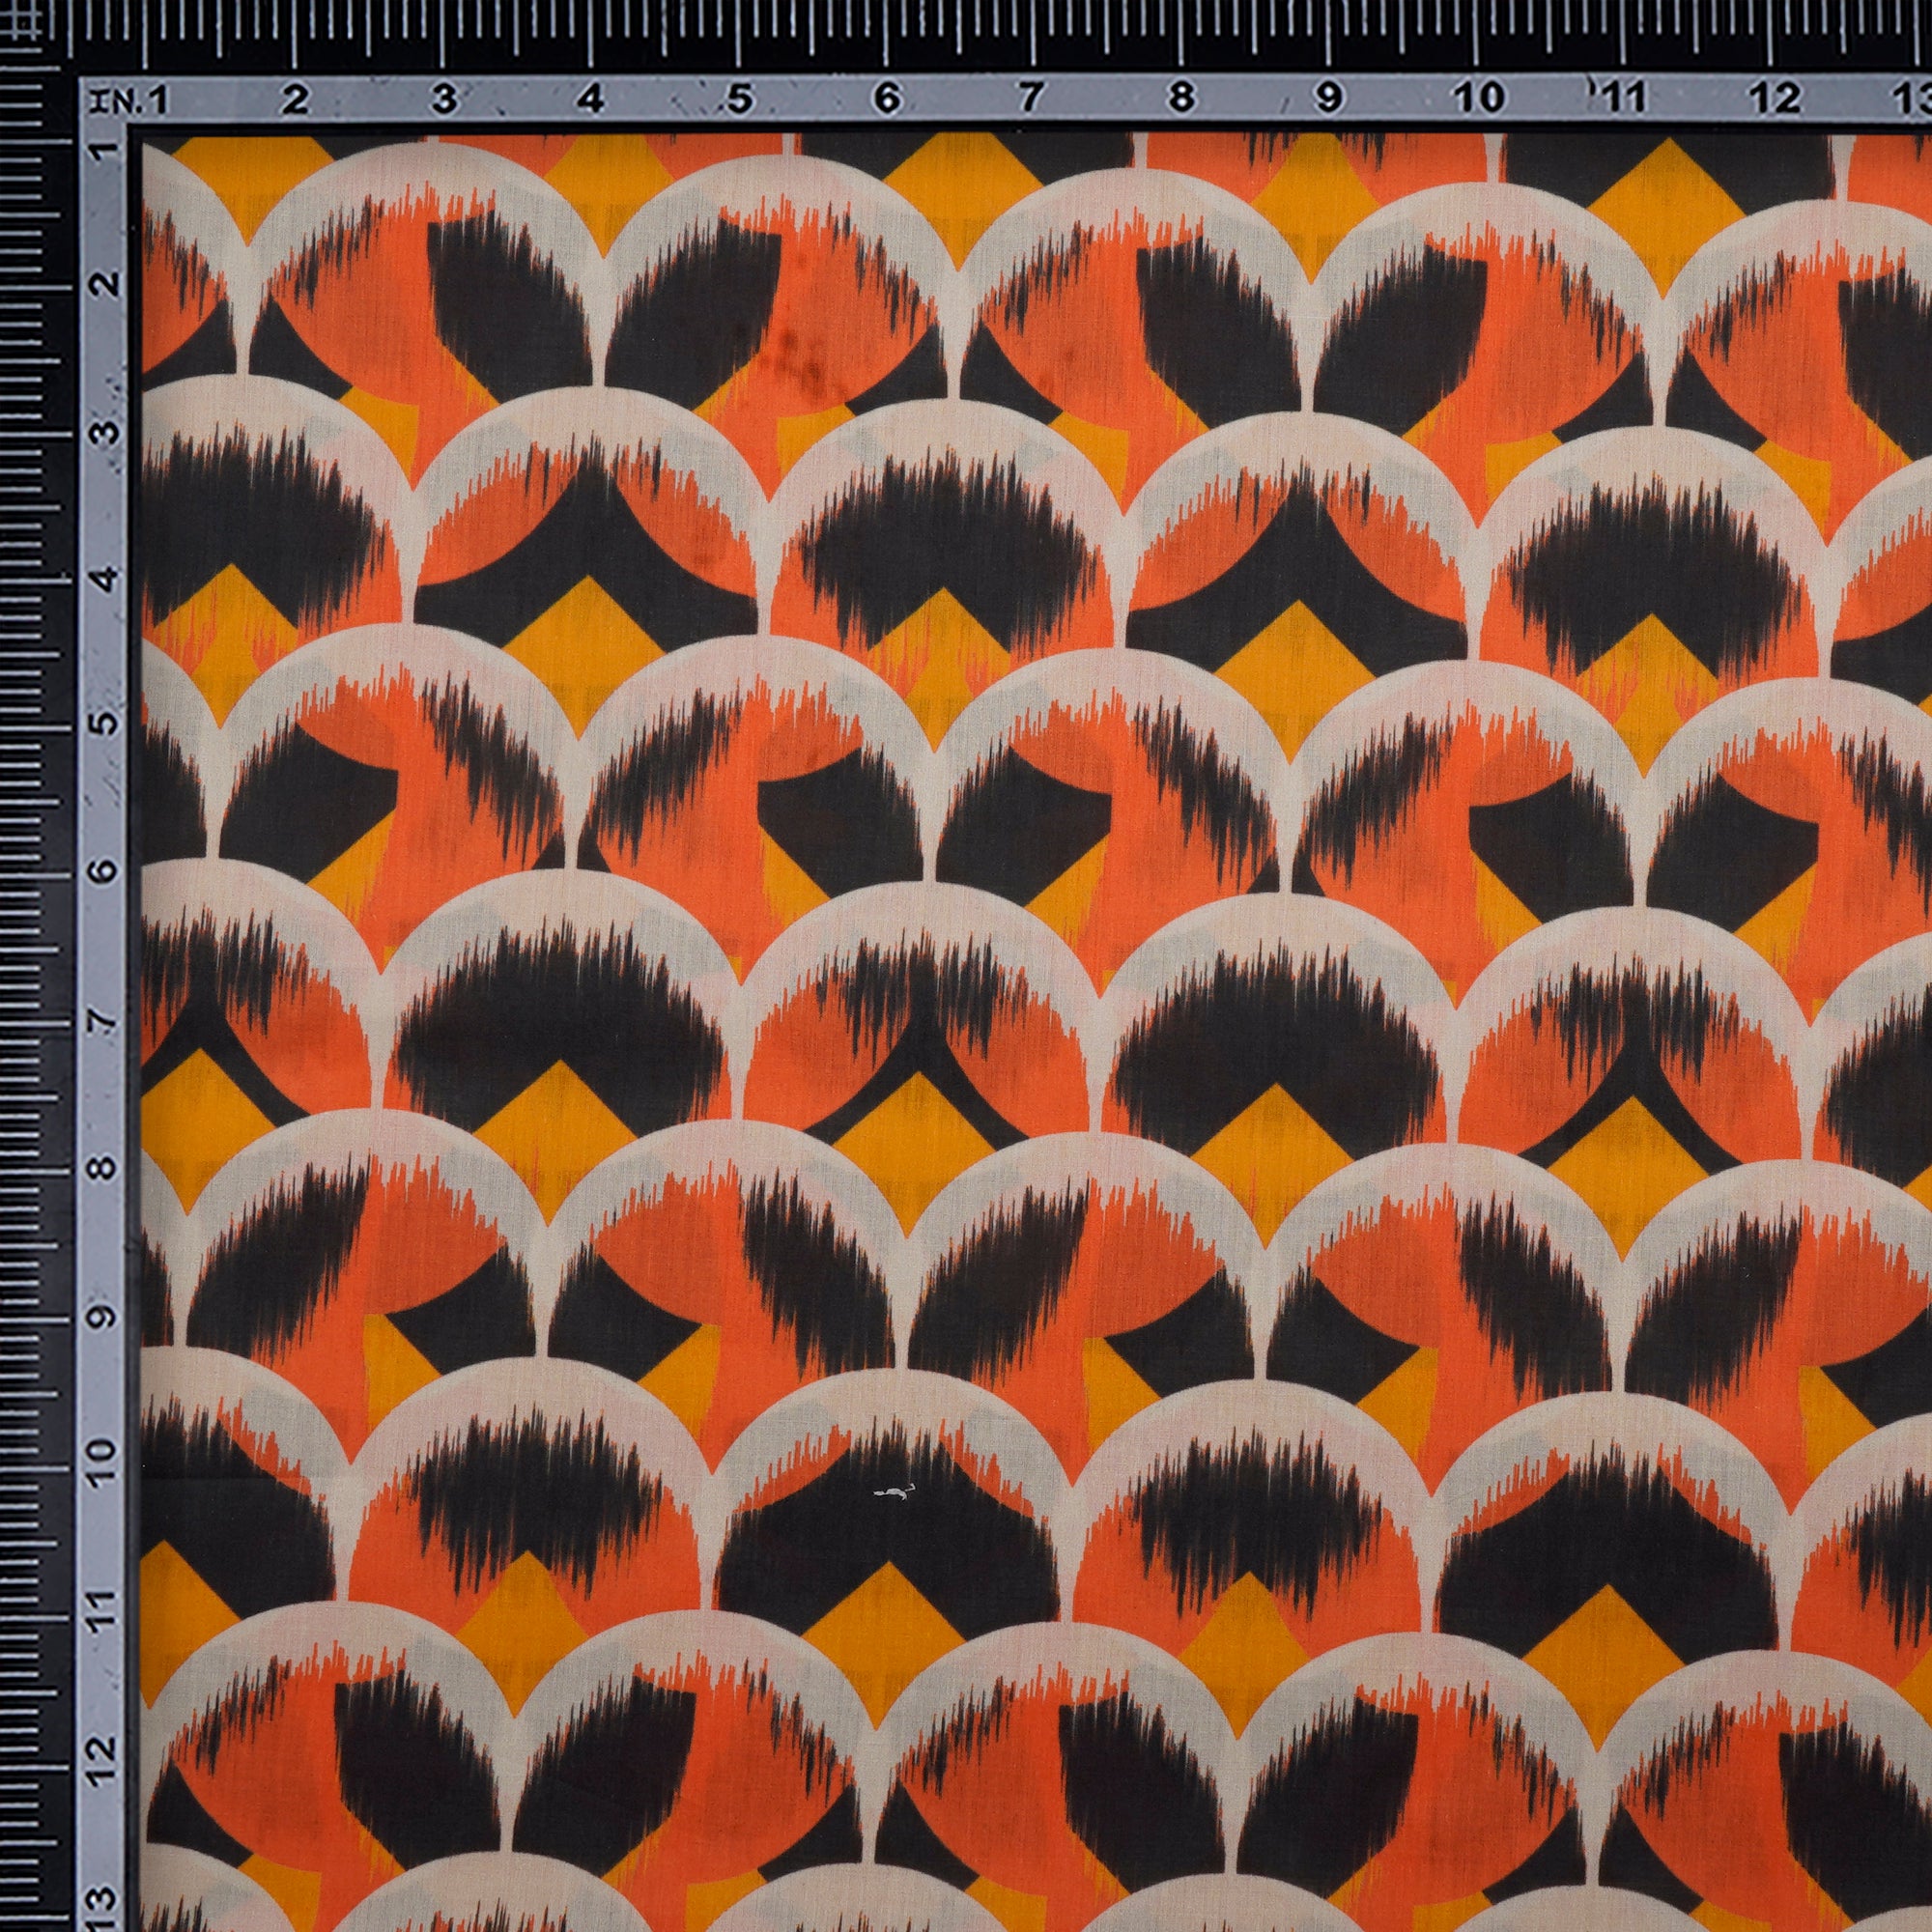 Multi color Digital Printed Cotton Lawn Fabric